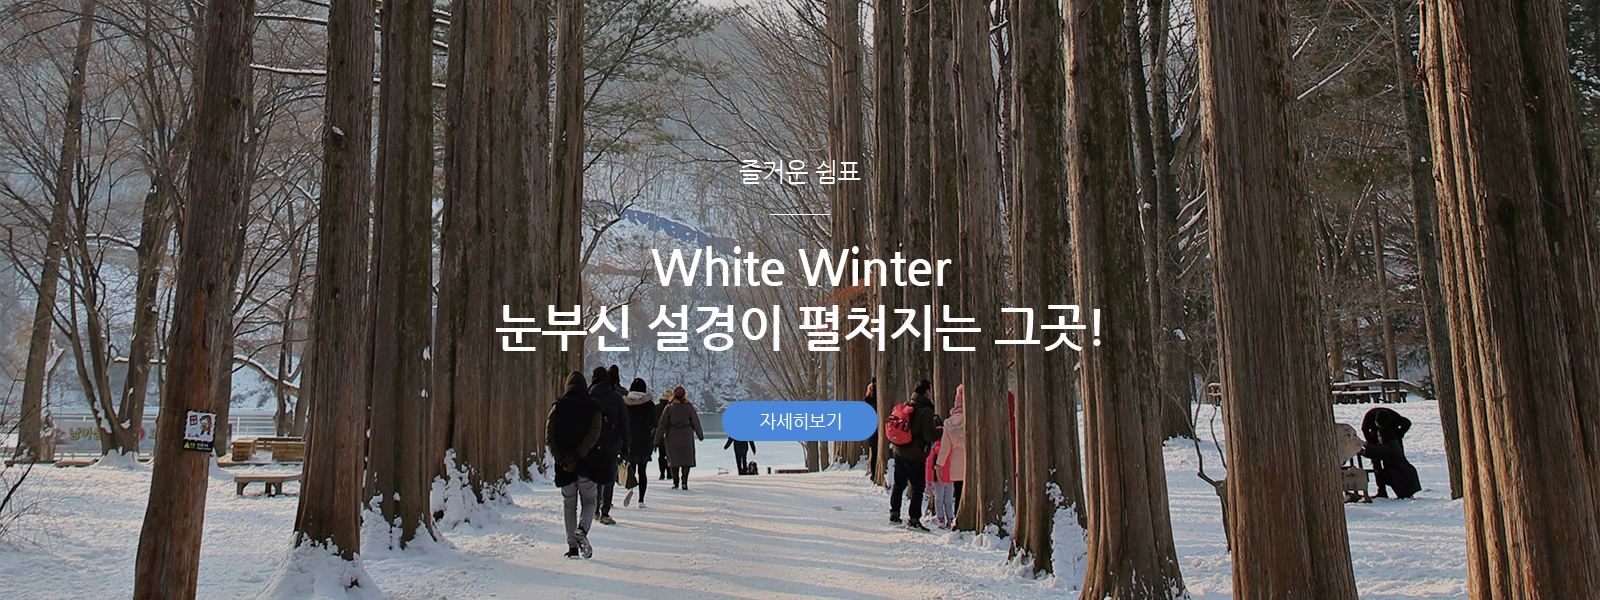 즐거운 쉼표 - White Winter 눈부신 설경이 펼쳐지는 그곳!’